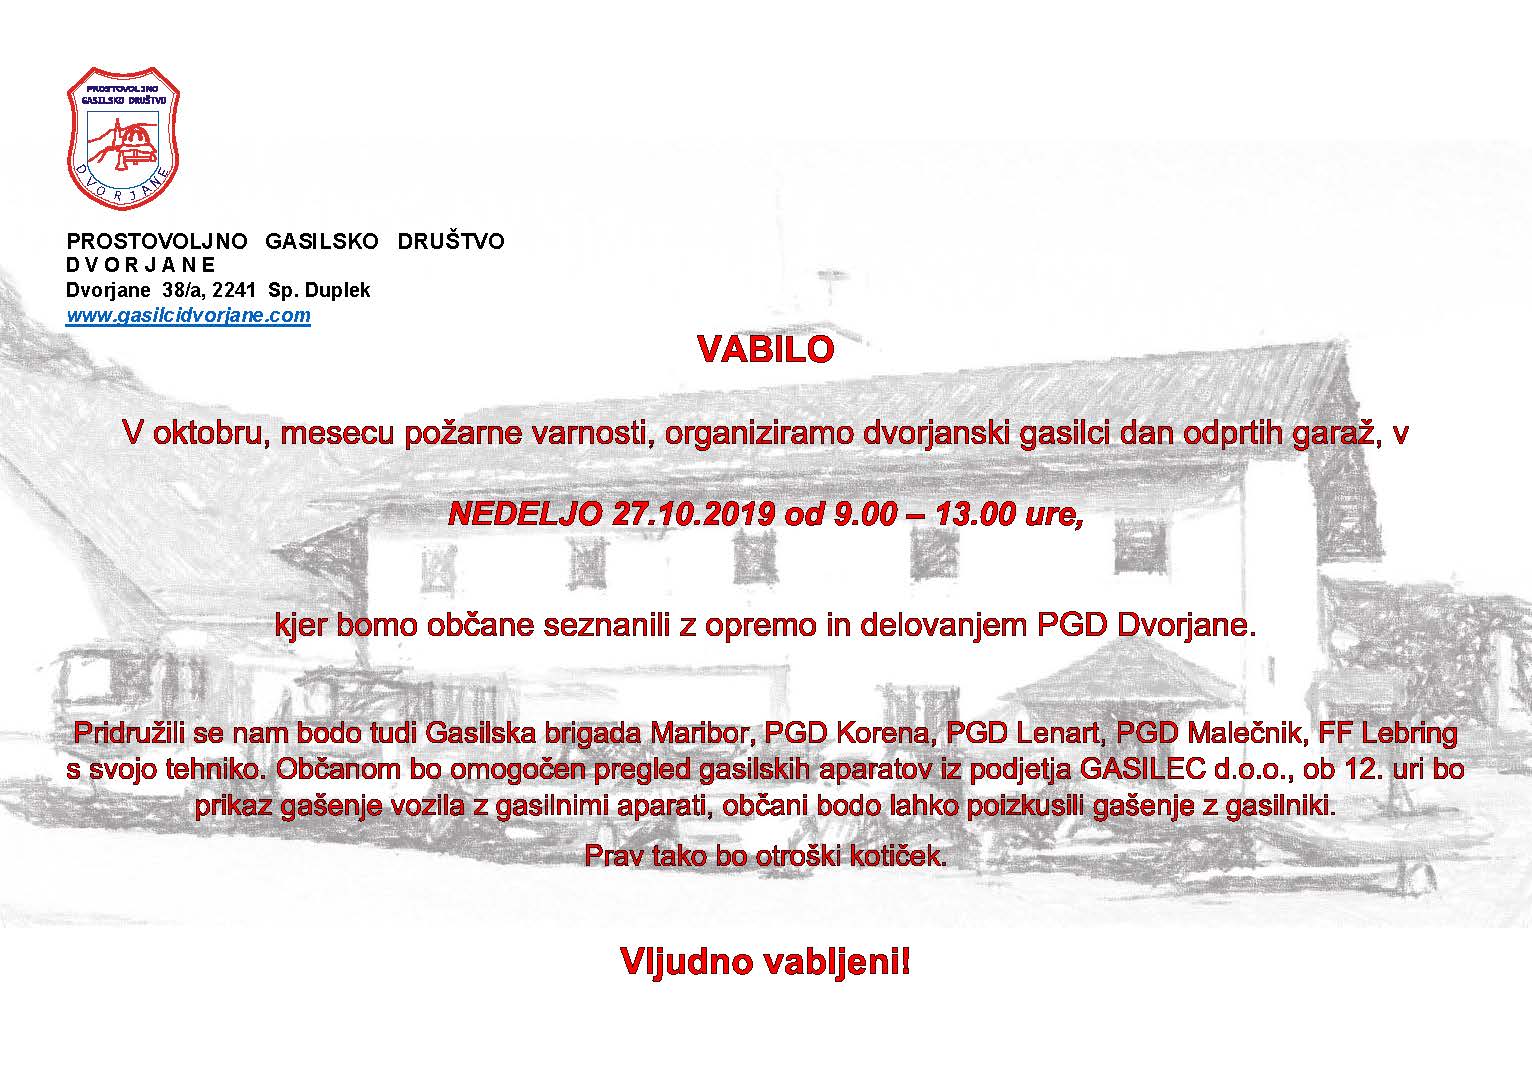 Vabilo2019-2.jpg